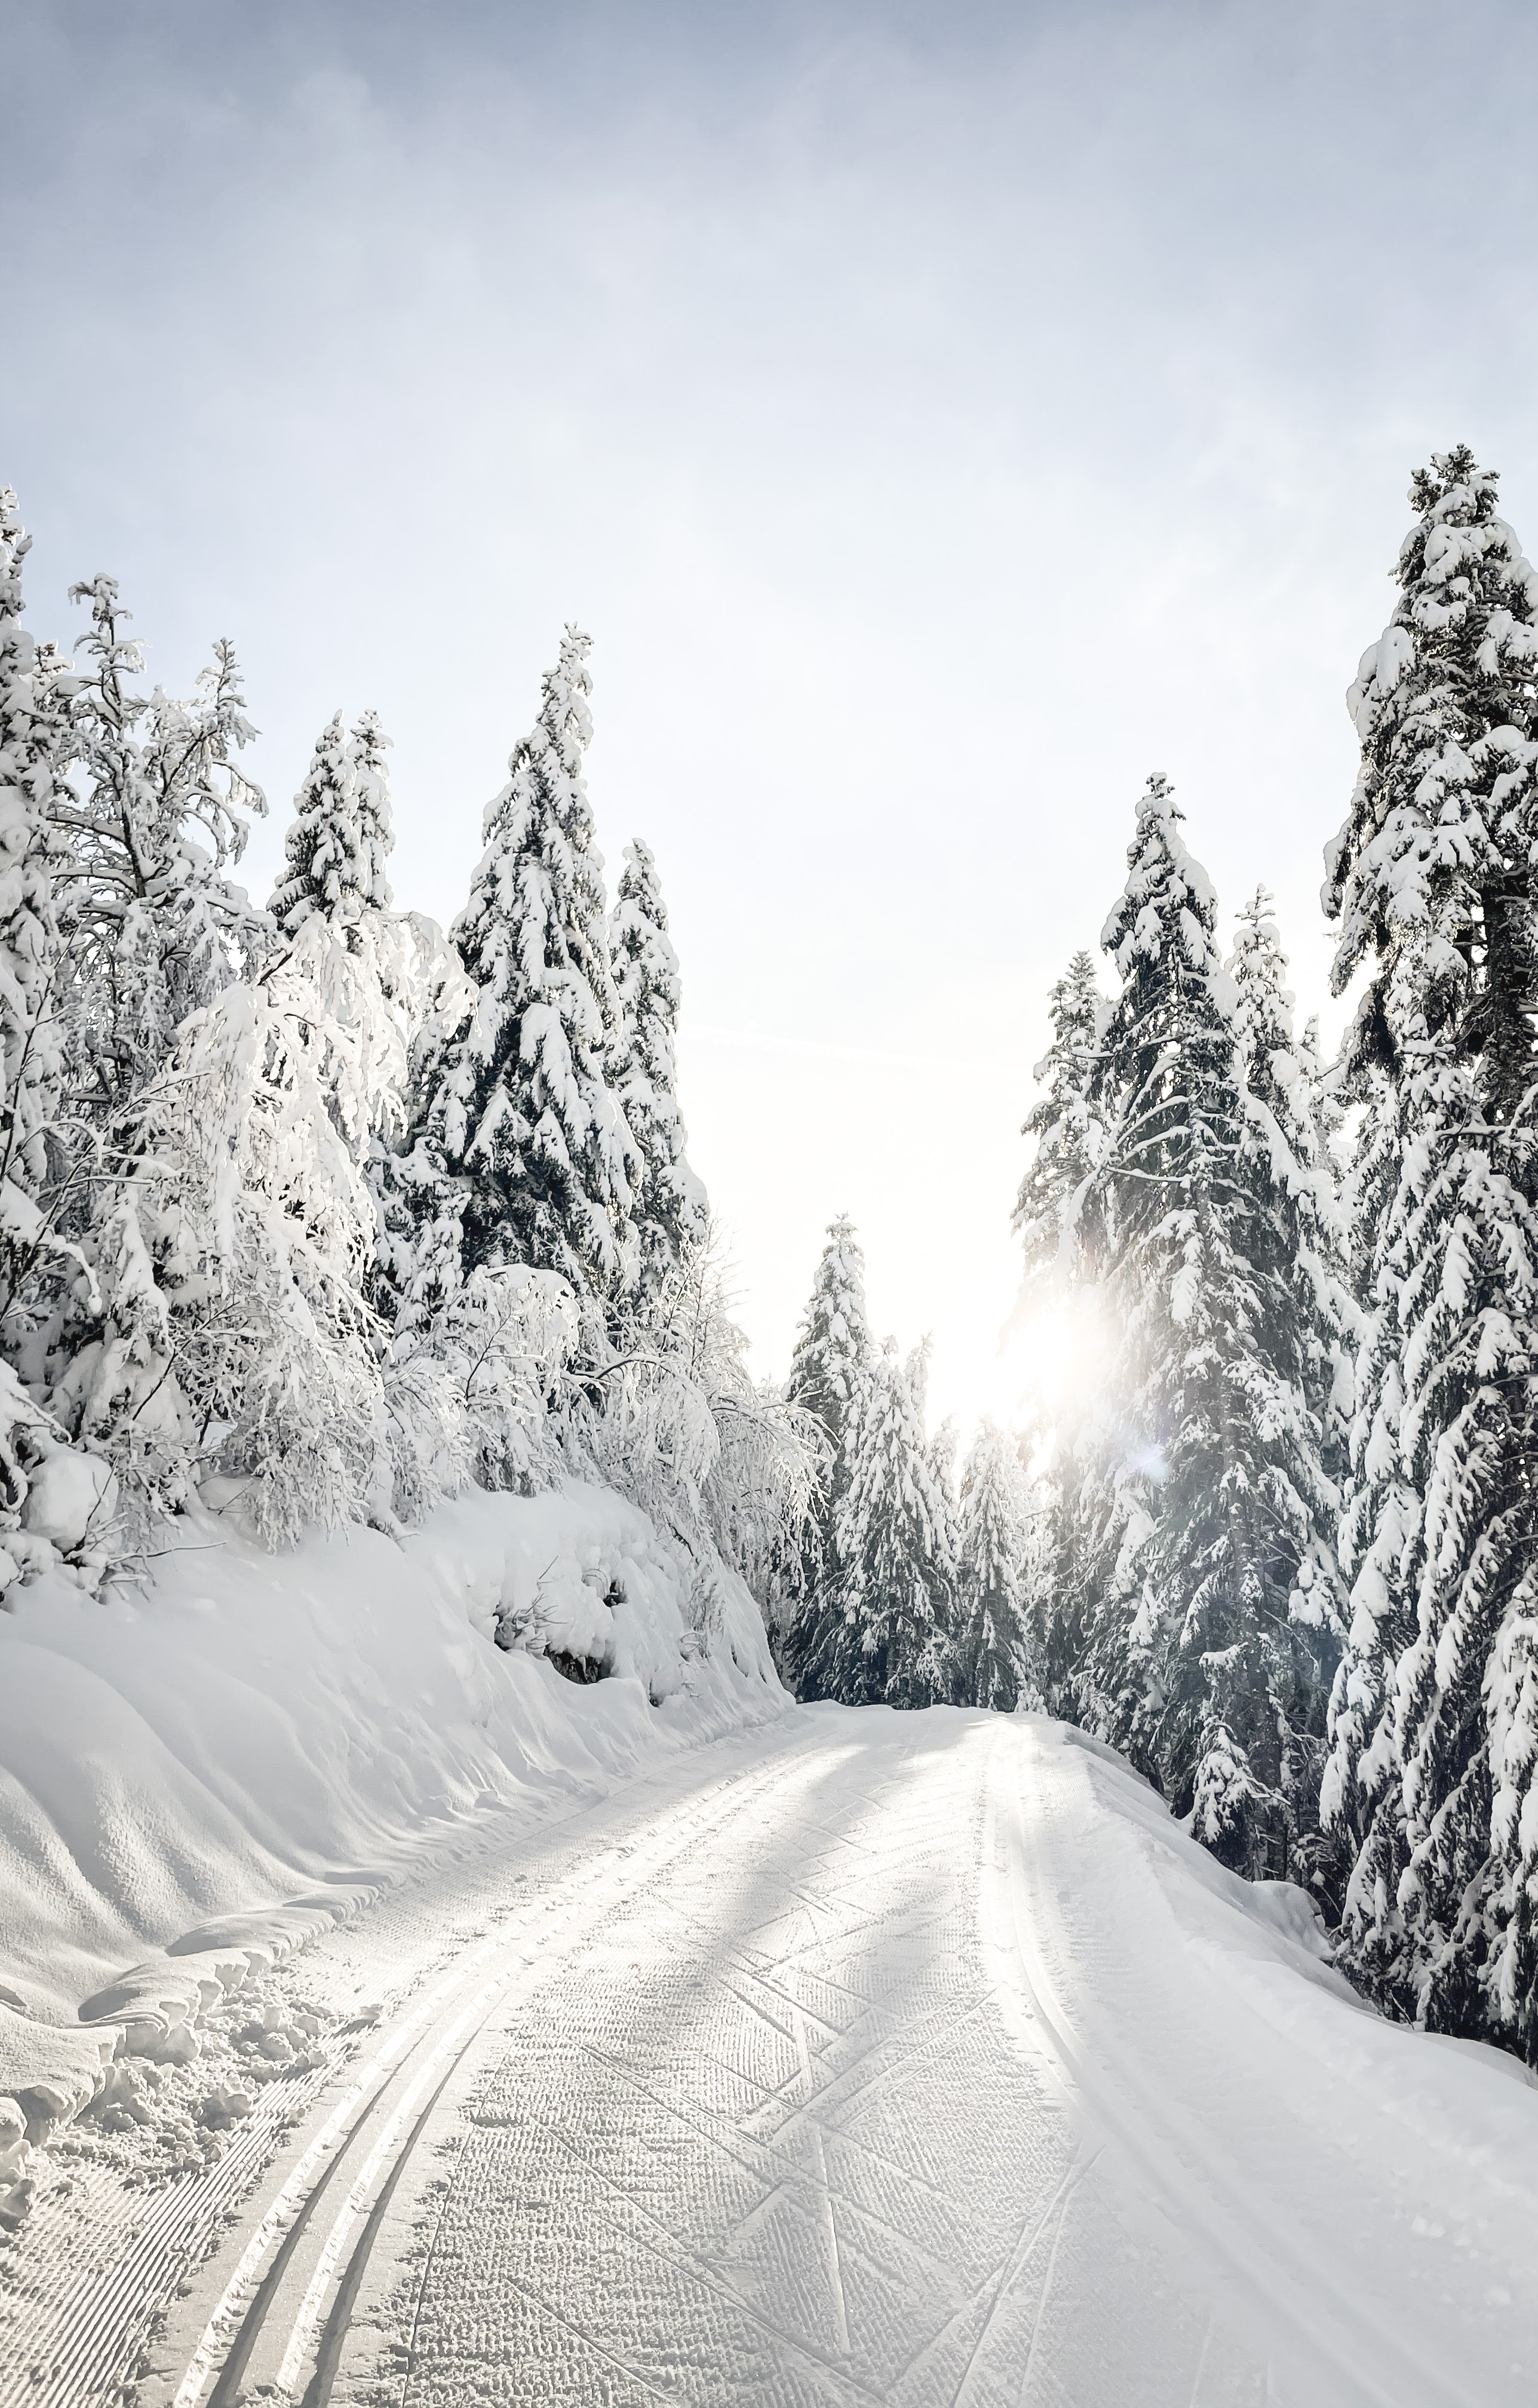 Скачать обои бесплатно Снег, Дорога, Заснеженный, Деревья, Природа, Зима картинка на рабочий стол ПК